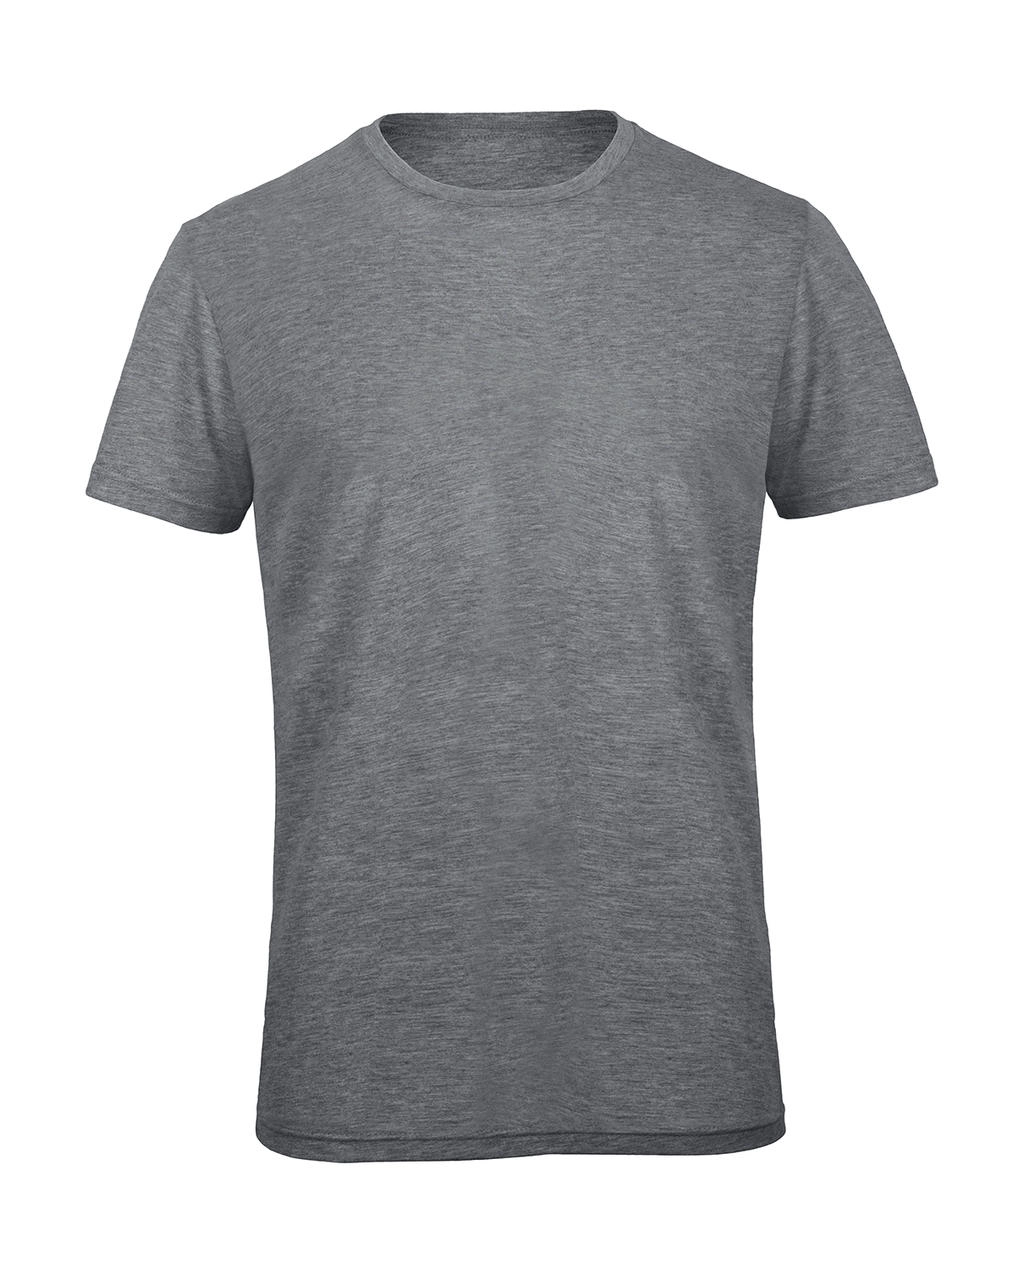 Triblend/men T-Shirt zum Besticken und Bedrucken in der Farbe Heather Light Grey mit Ihren Logo, Schriftzug oder Motiv.